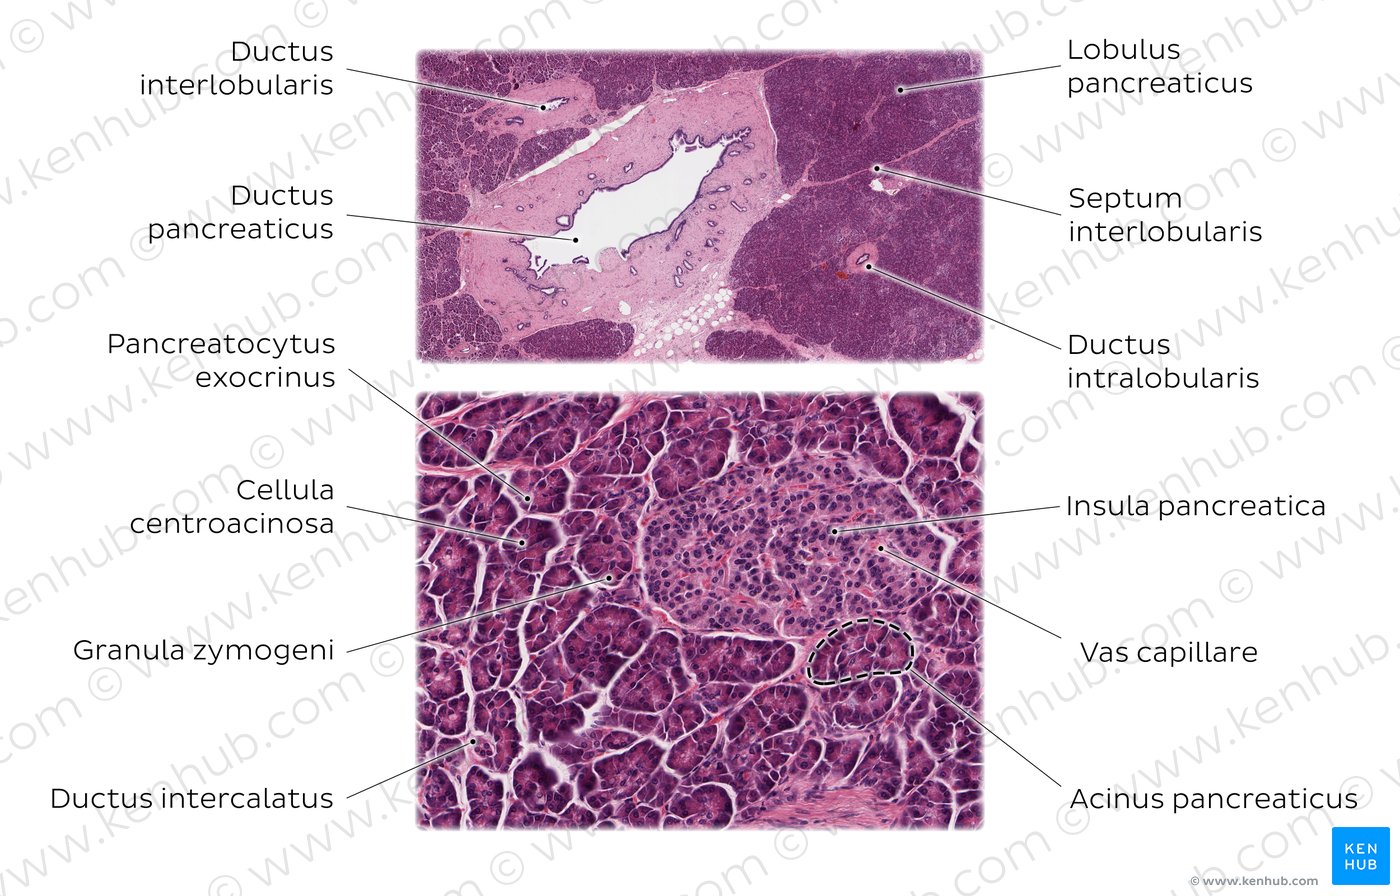 Pancreas (Histologisches Präparat. Färbung: HE, Obere Abbildung: mittlere Vergrößerung, Untere Abbildung: hohe Vergrößerung)